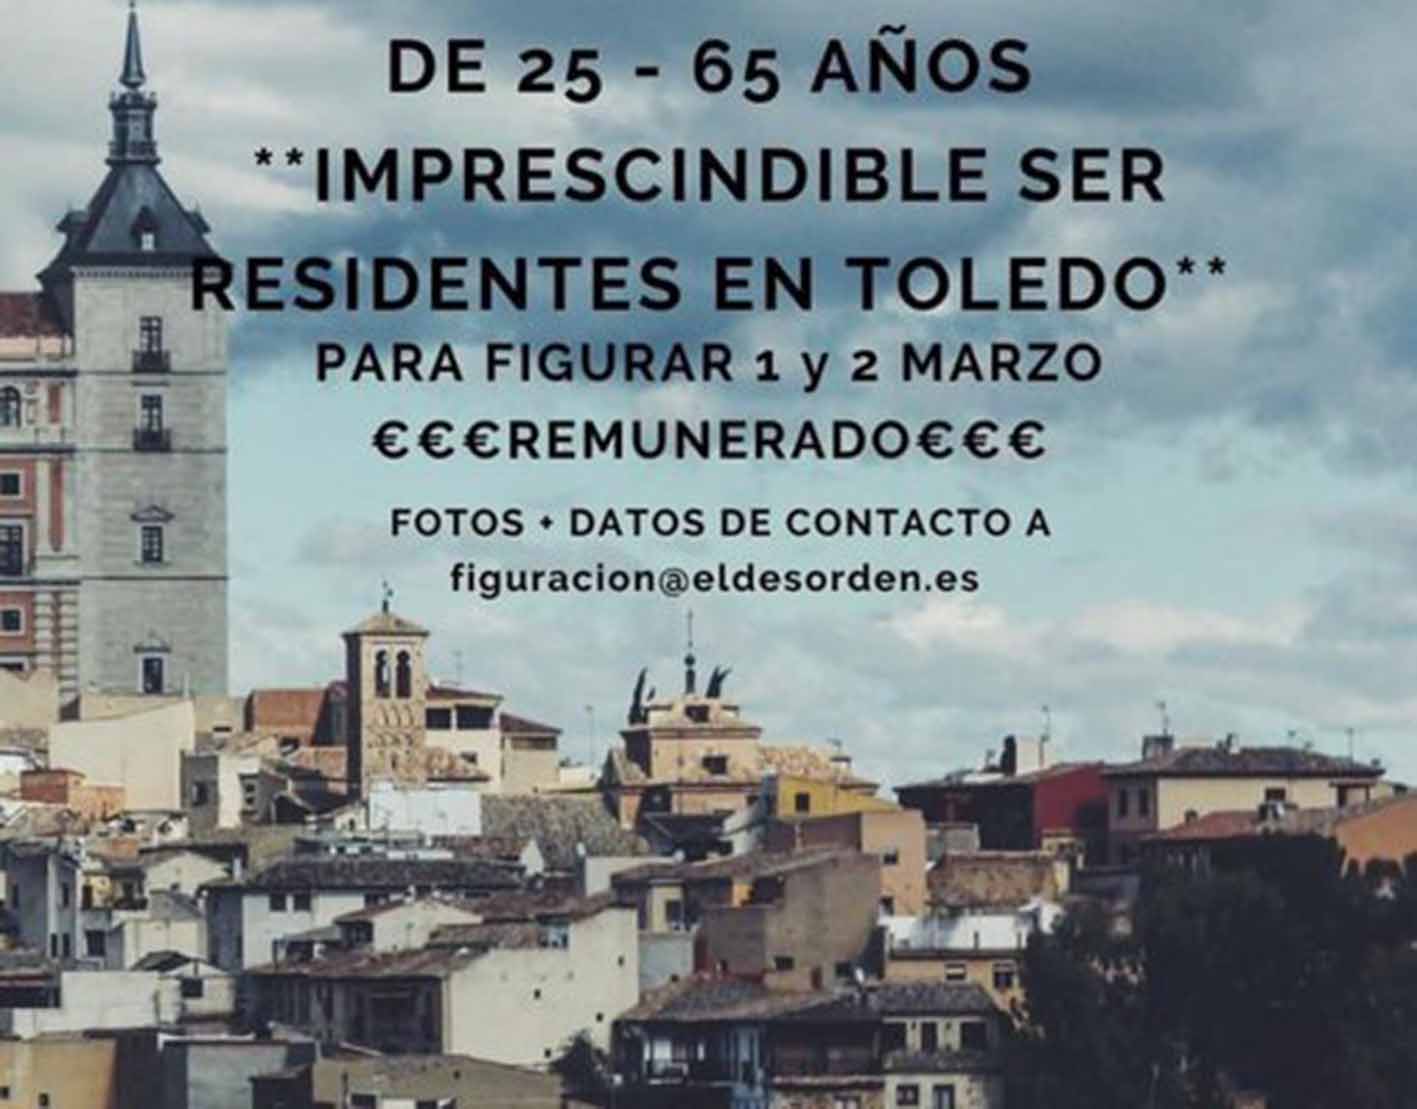 Buscan figurantes en Toledo para "ya" (detalle del cartel del anuncio).